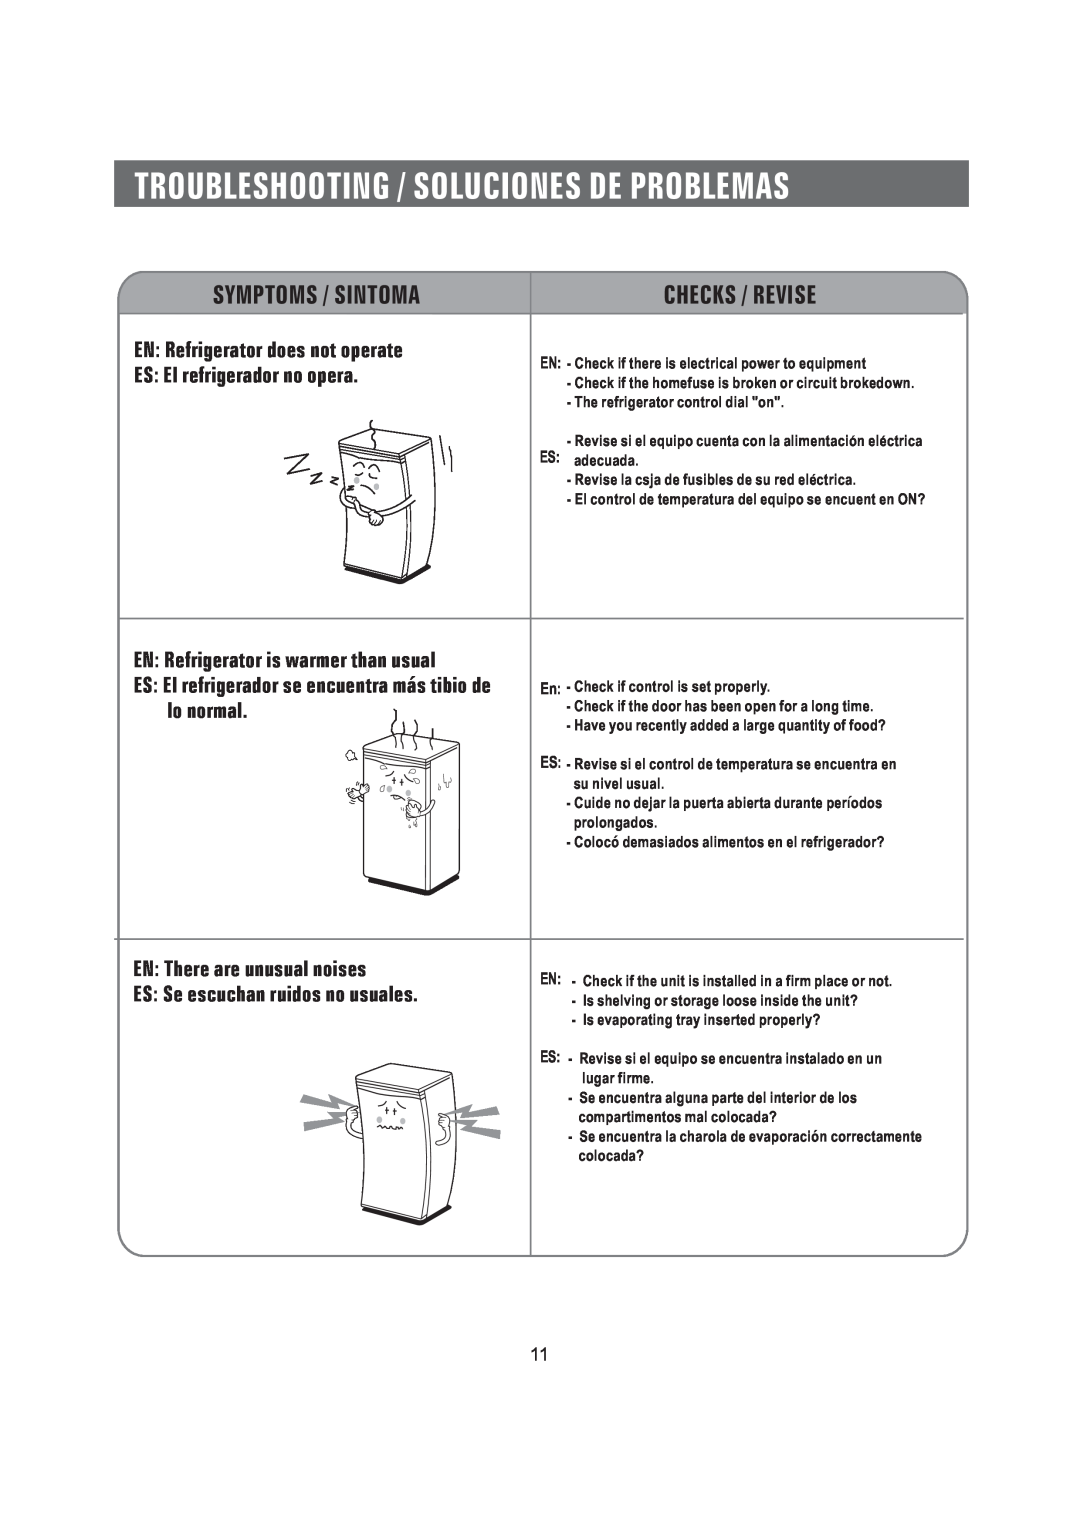 Samsung SRG-058 manual Symptoms / Sintoma, Checks / Revise, EN Refrigerator does not operate, ES El refrigerador no opera 